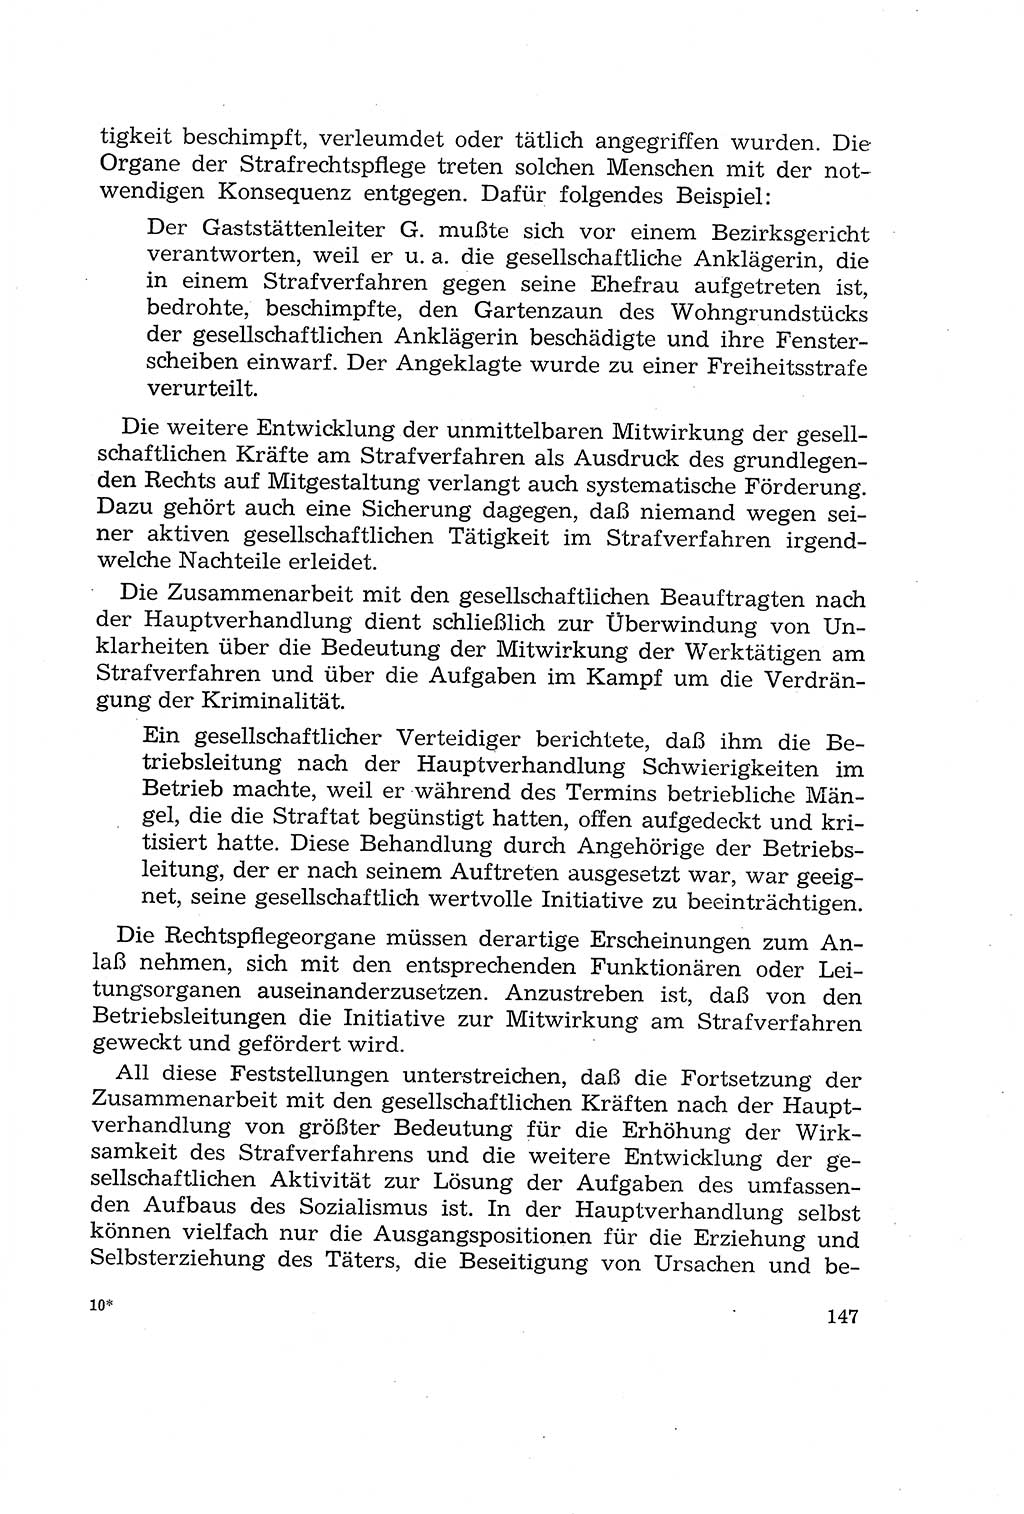 Die Mitwirkung der Werktätigen am Strafverfahren [Deutsche Demokratische Republik (DDR)] 1966, Seite 147 (Mitw. Str.-Verf. DDR 1966, S. 147)